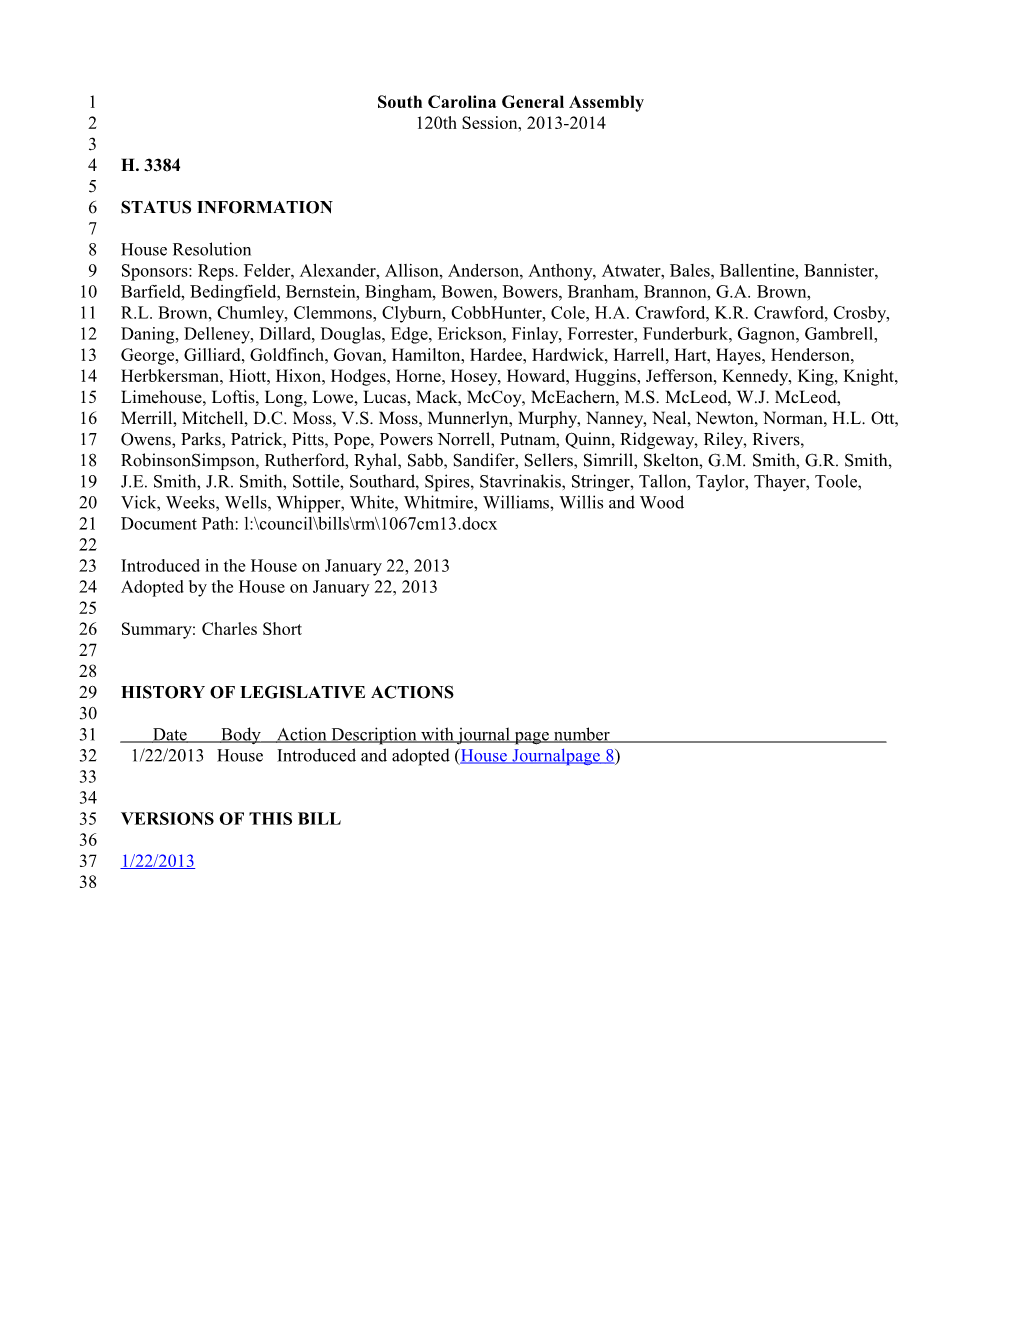 2013-2014 Bill 3384: Charles Short - South Carolina Legislature Online